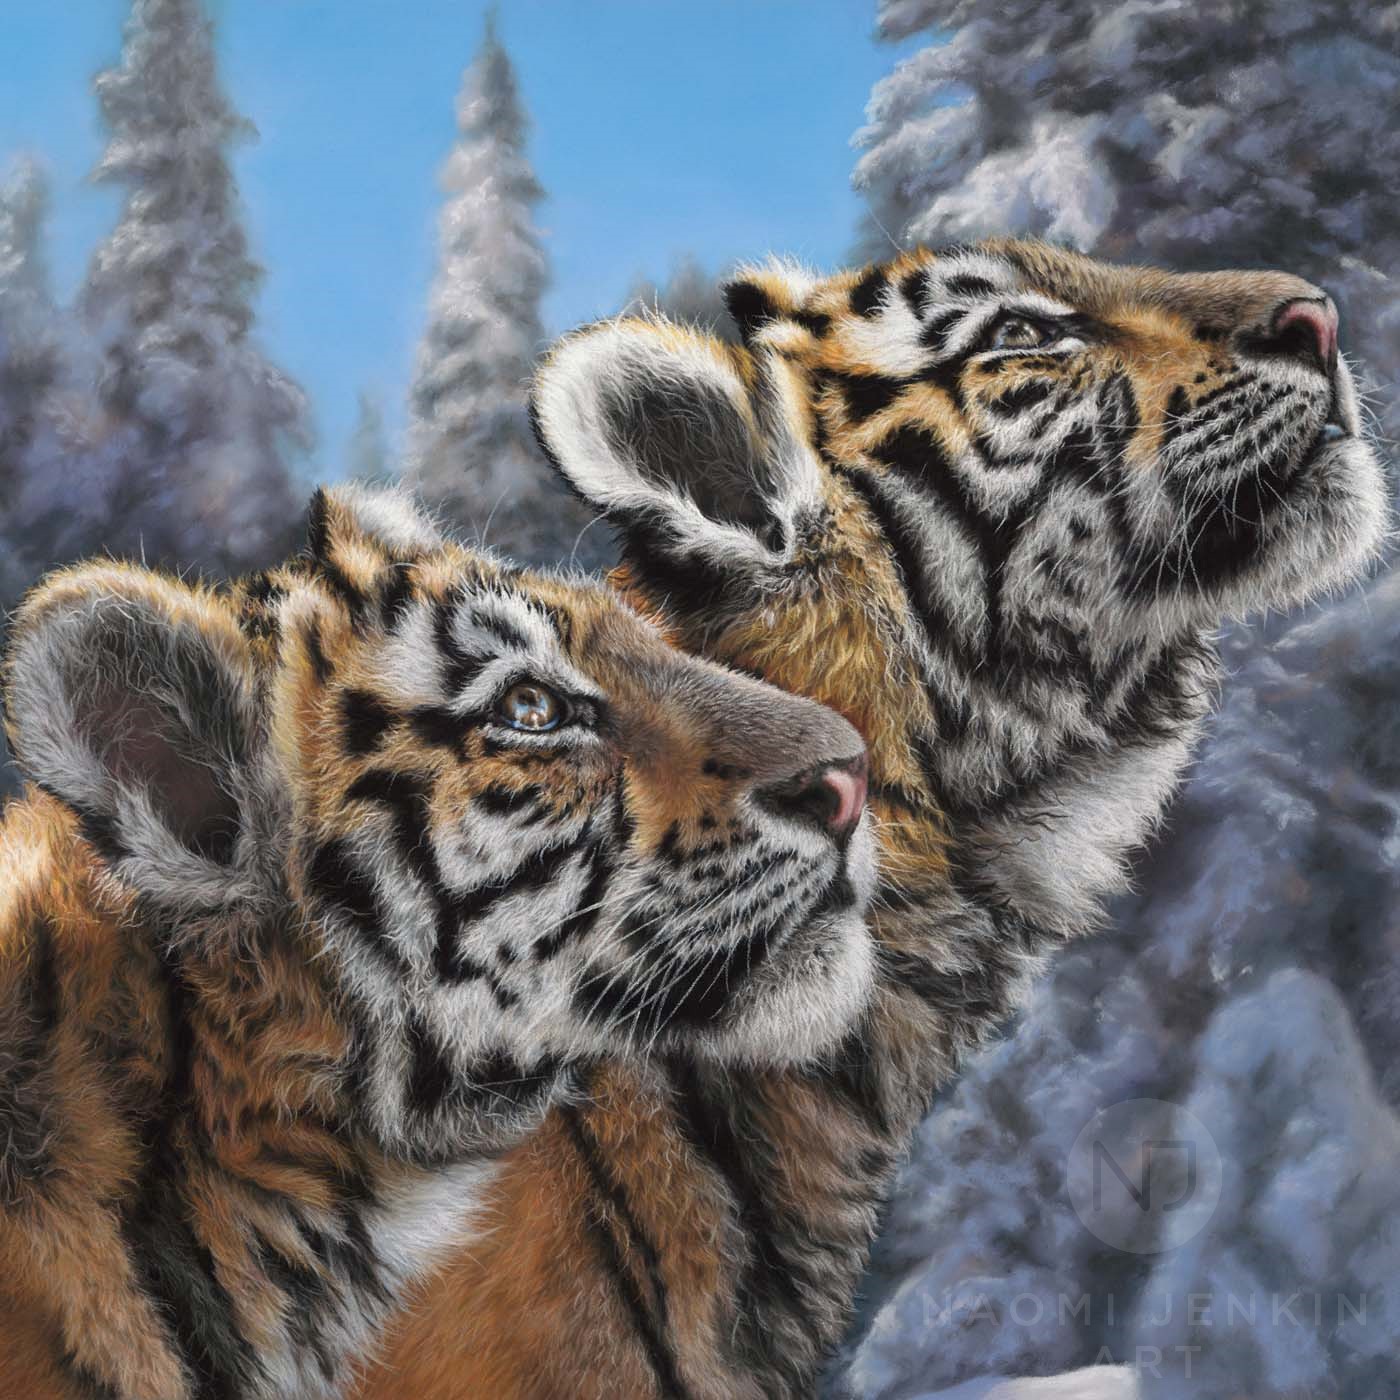 Amur tiger painting by wildlife artist Naomi Jenkin. 